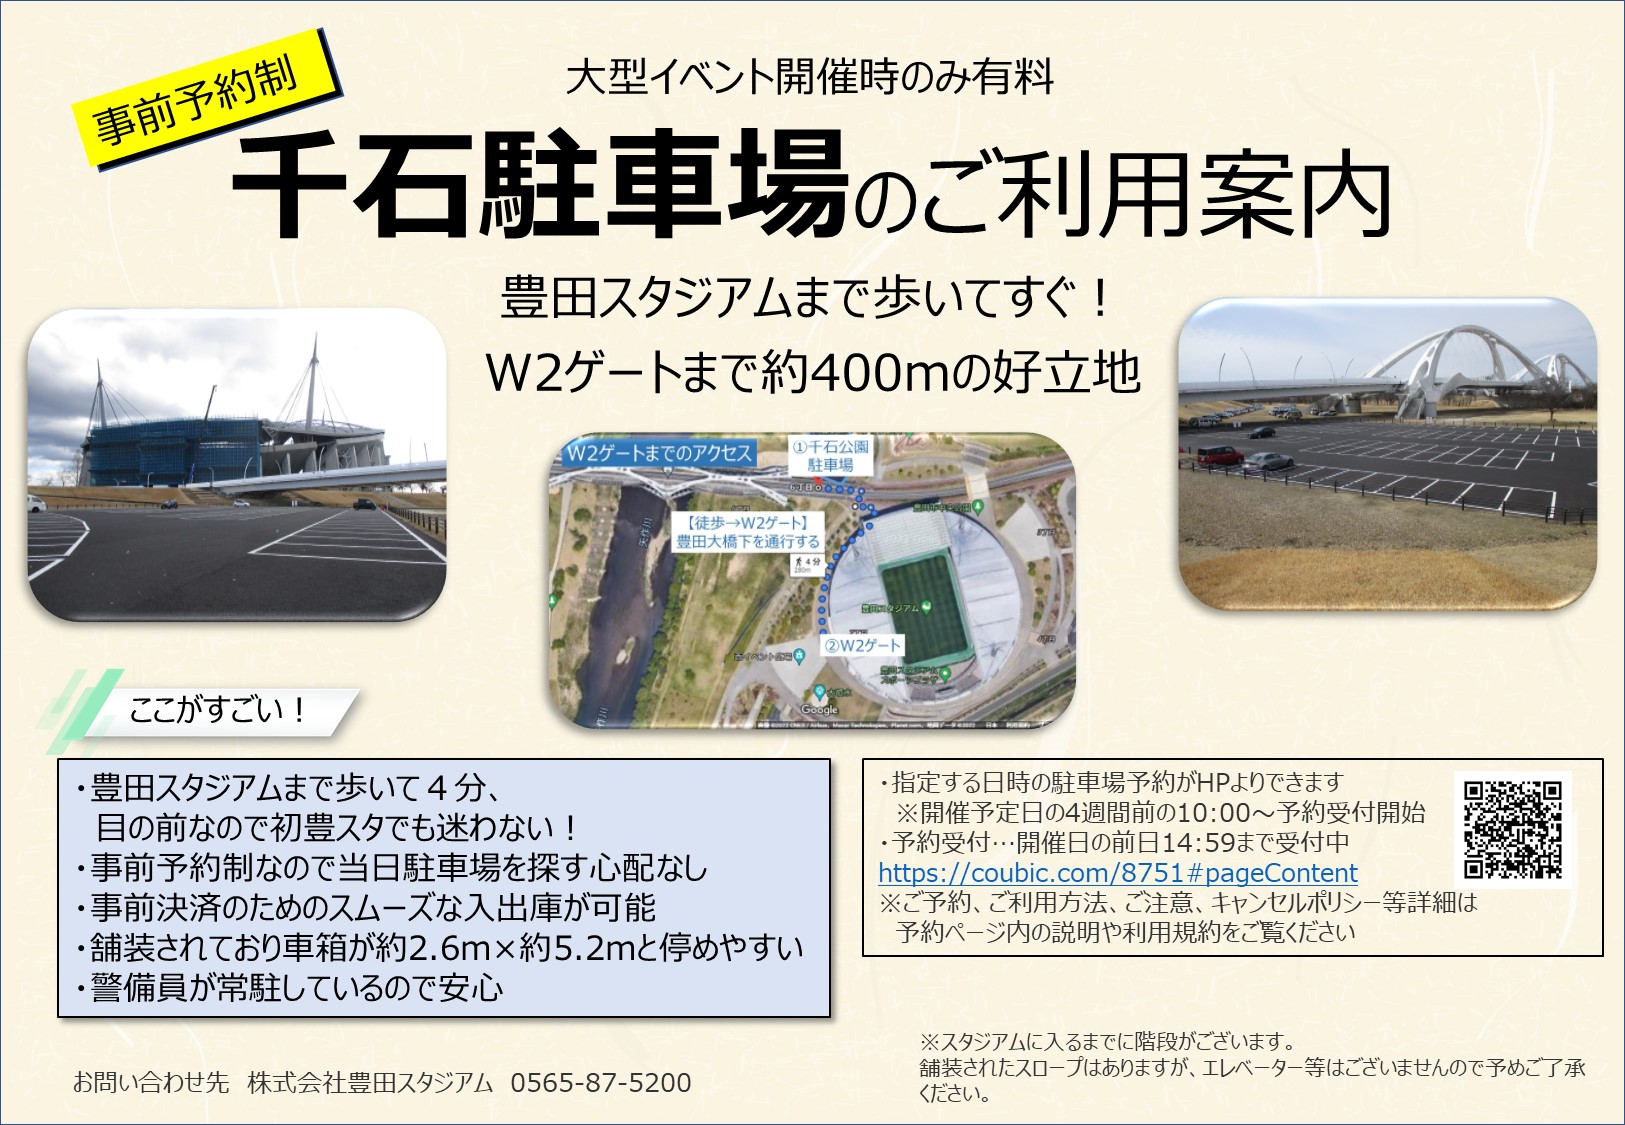 事前予約受付 千石公園駐車場の有料貸し駐車場について Toyota Stadium 豊田スタジアム